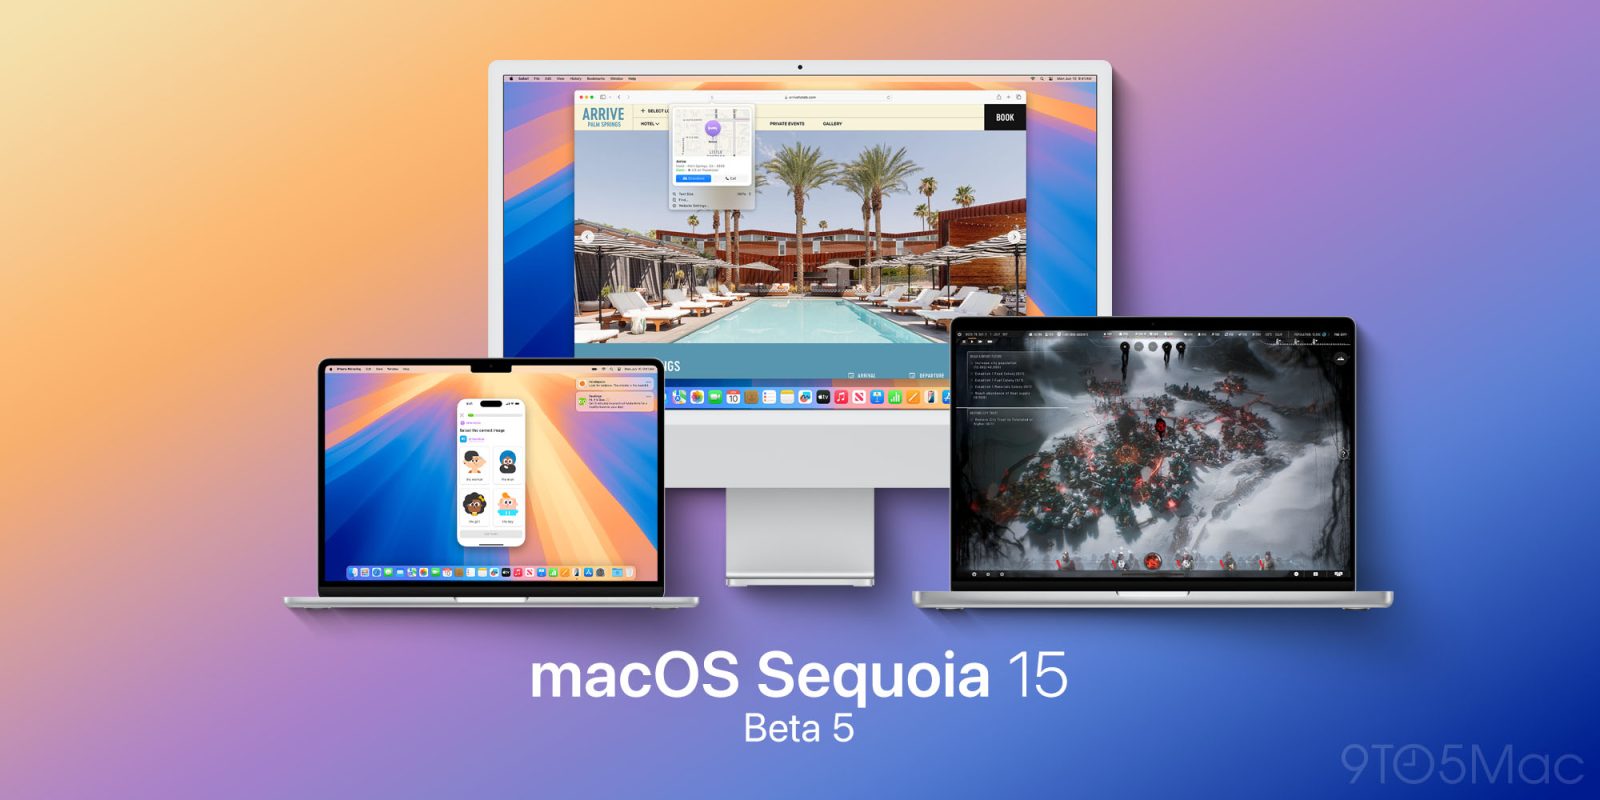 macOS Sequoia 15 beta 5